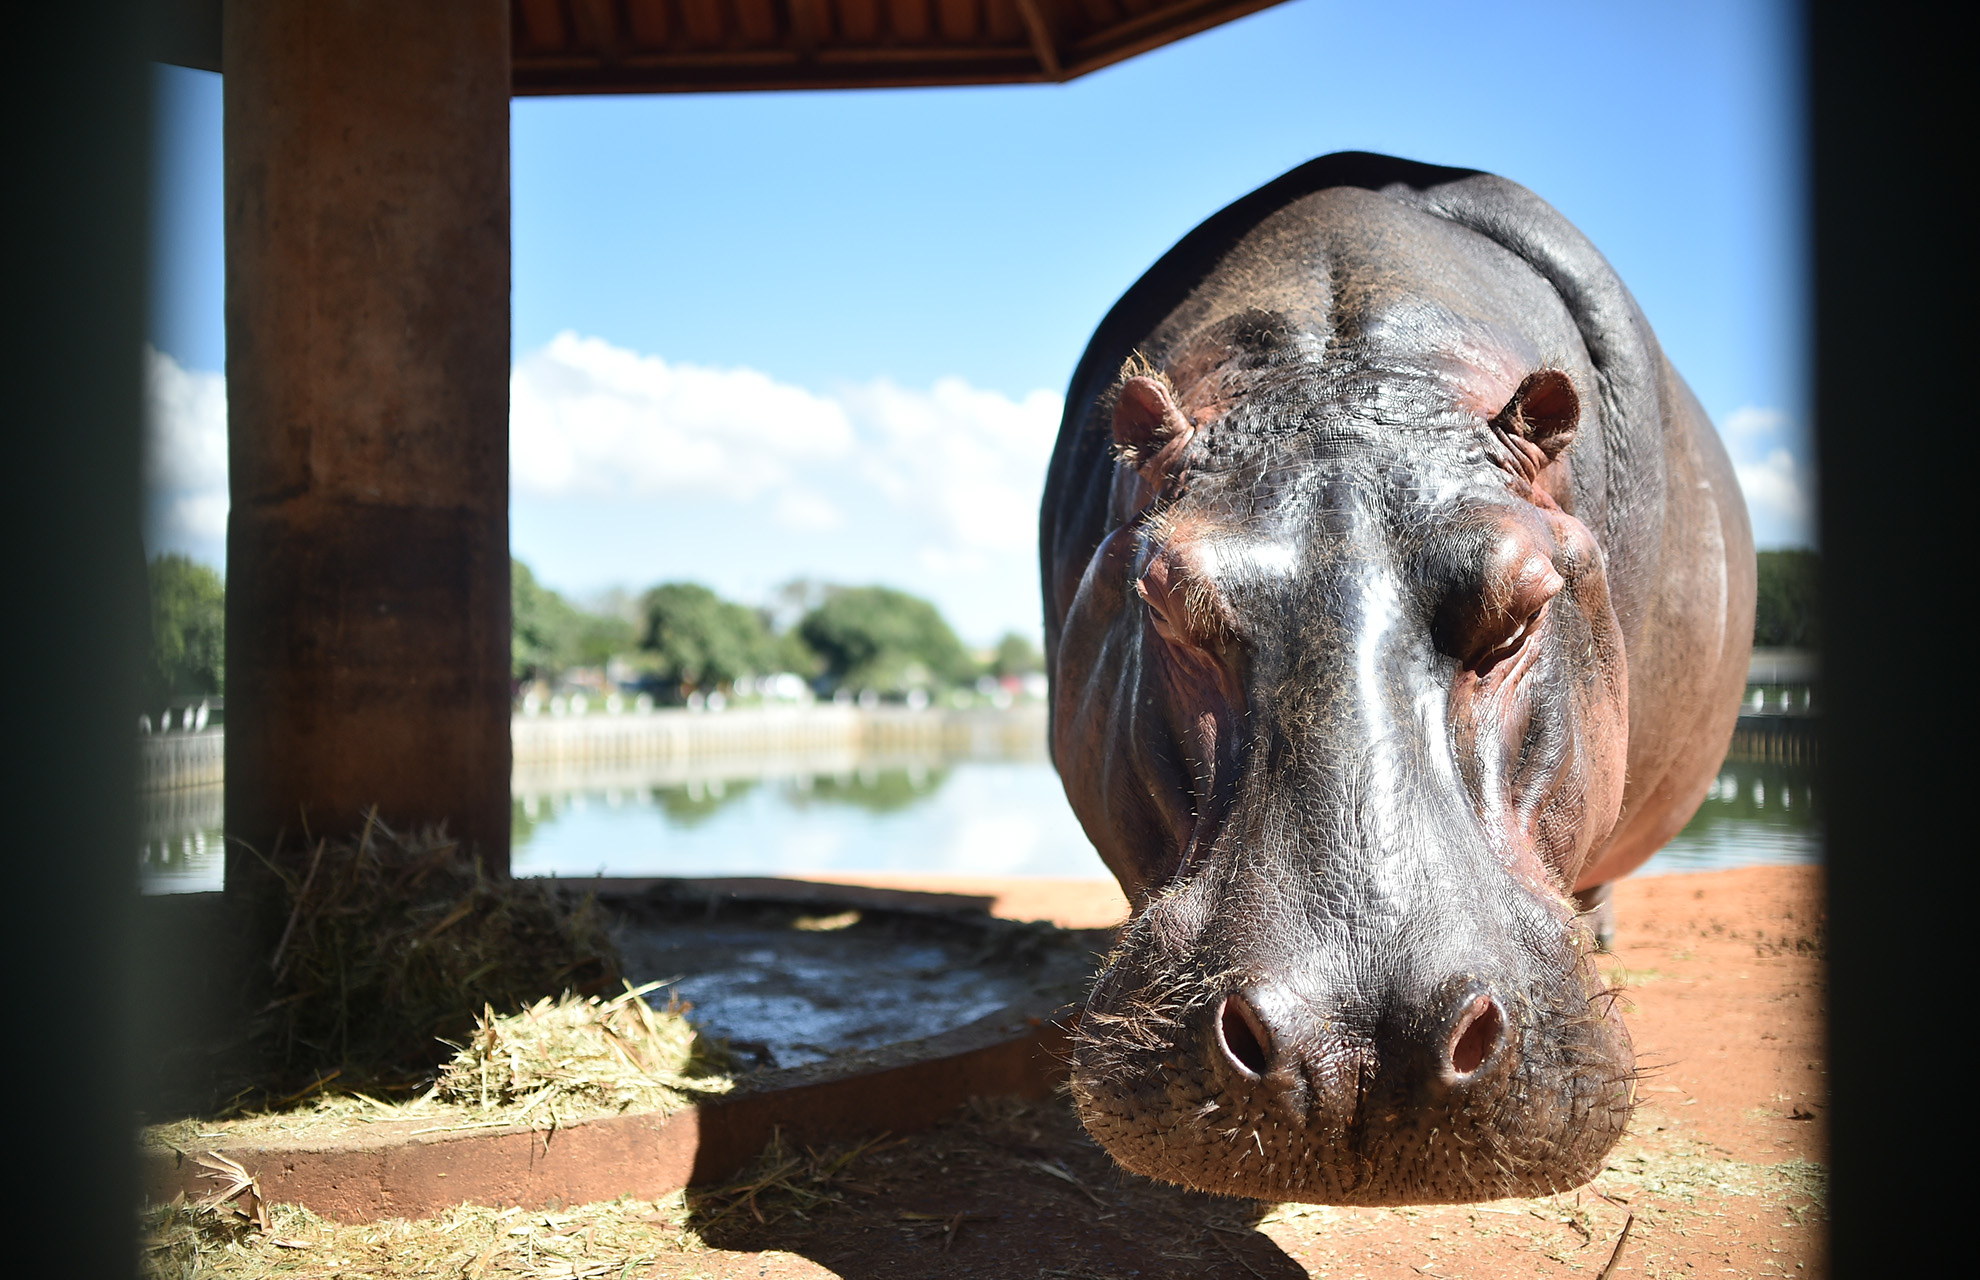 Estudo publicado em revista científica britânica listou 301 animais sob risco — entre eles o chamado hipopótamo-comum. Parque da capital federal tem quatro fêmeas da espécie